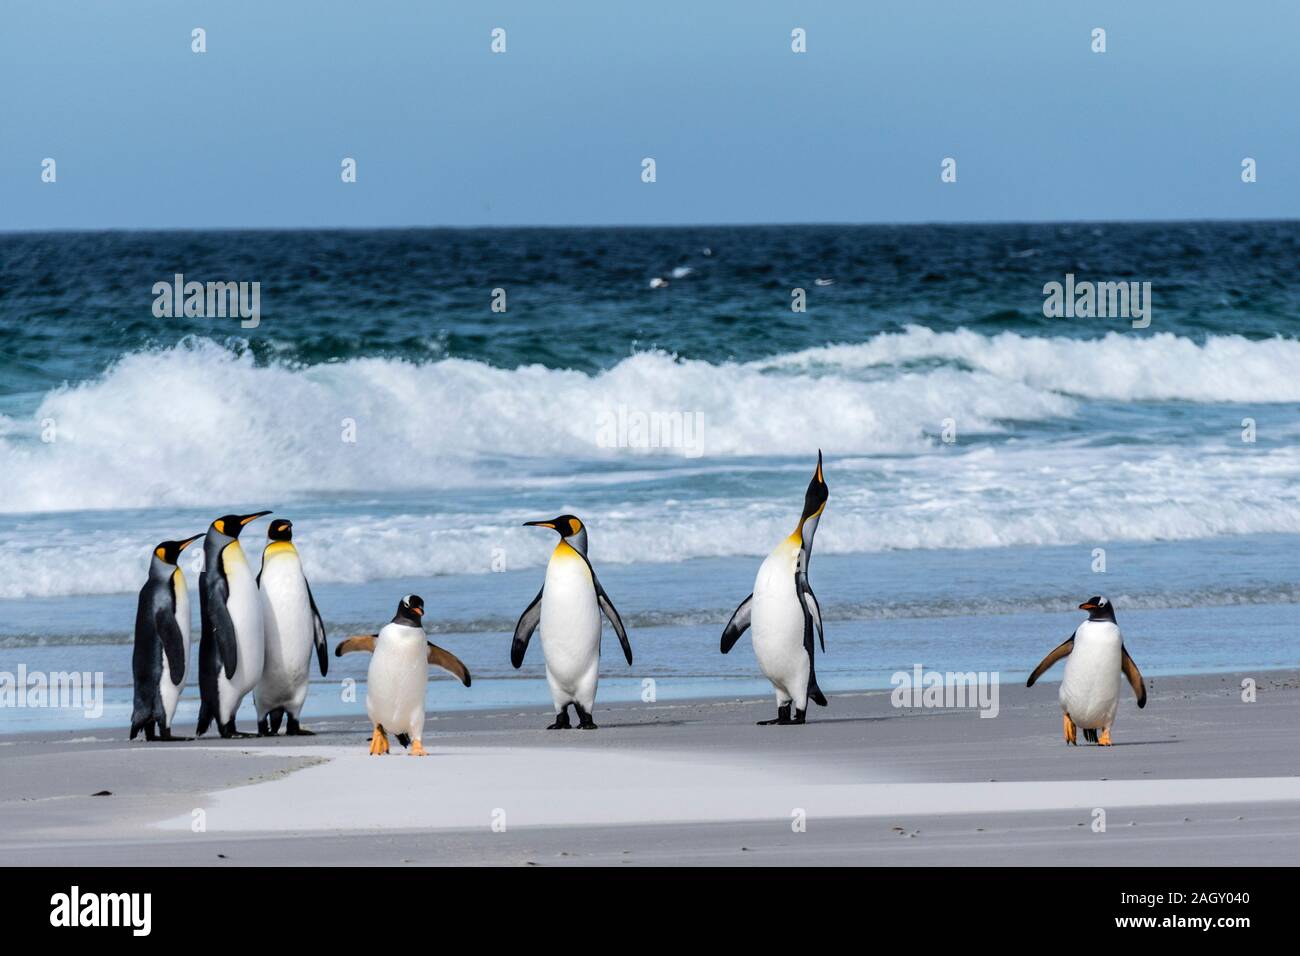 Huddle von König Pinguine Aptenodytes patagonicus, am Strand am Hals, Saunders Island, Falkland Inseln, Britisches Überseegebiet Stockfoto